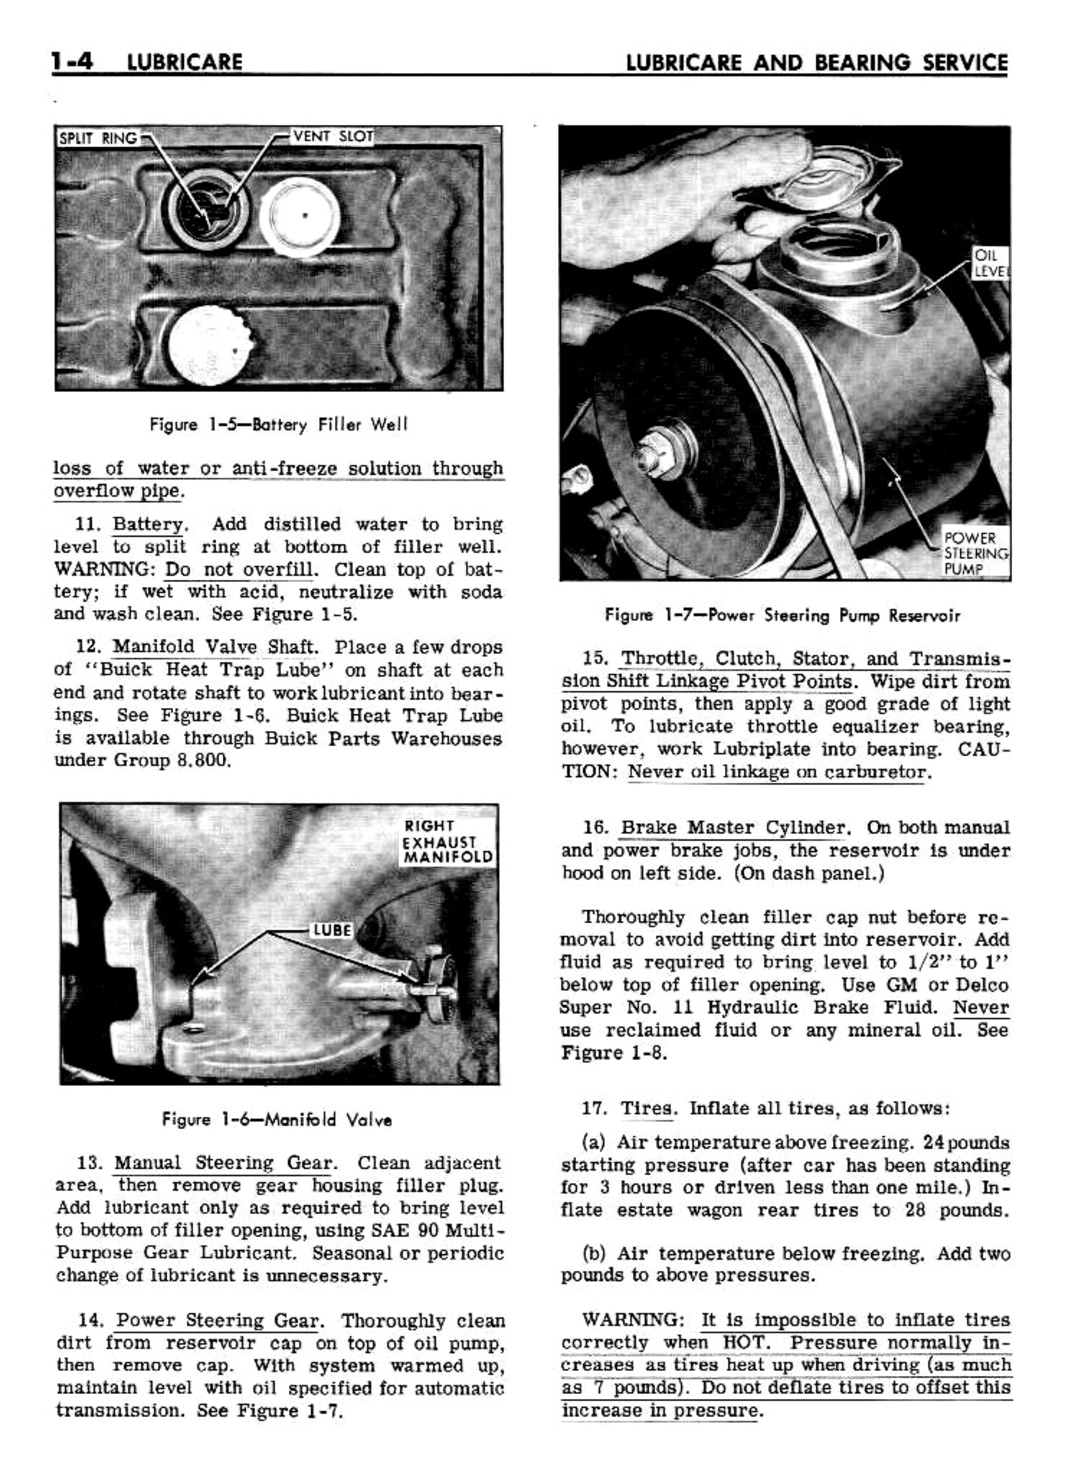 n_02 1961 Buick Shop Manual - Lubricare-004-004.jpg